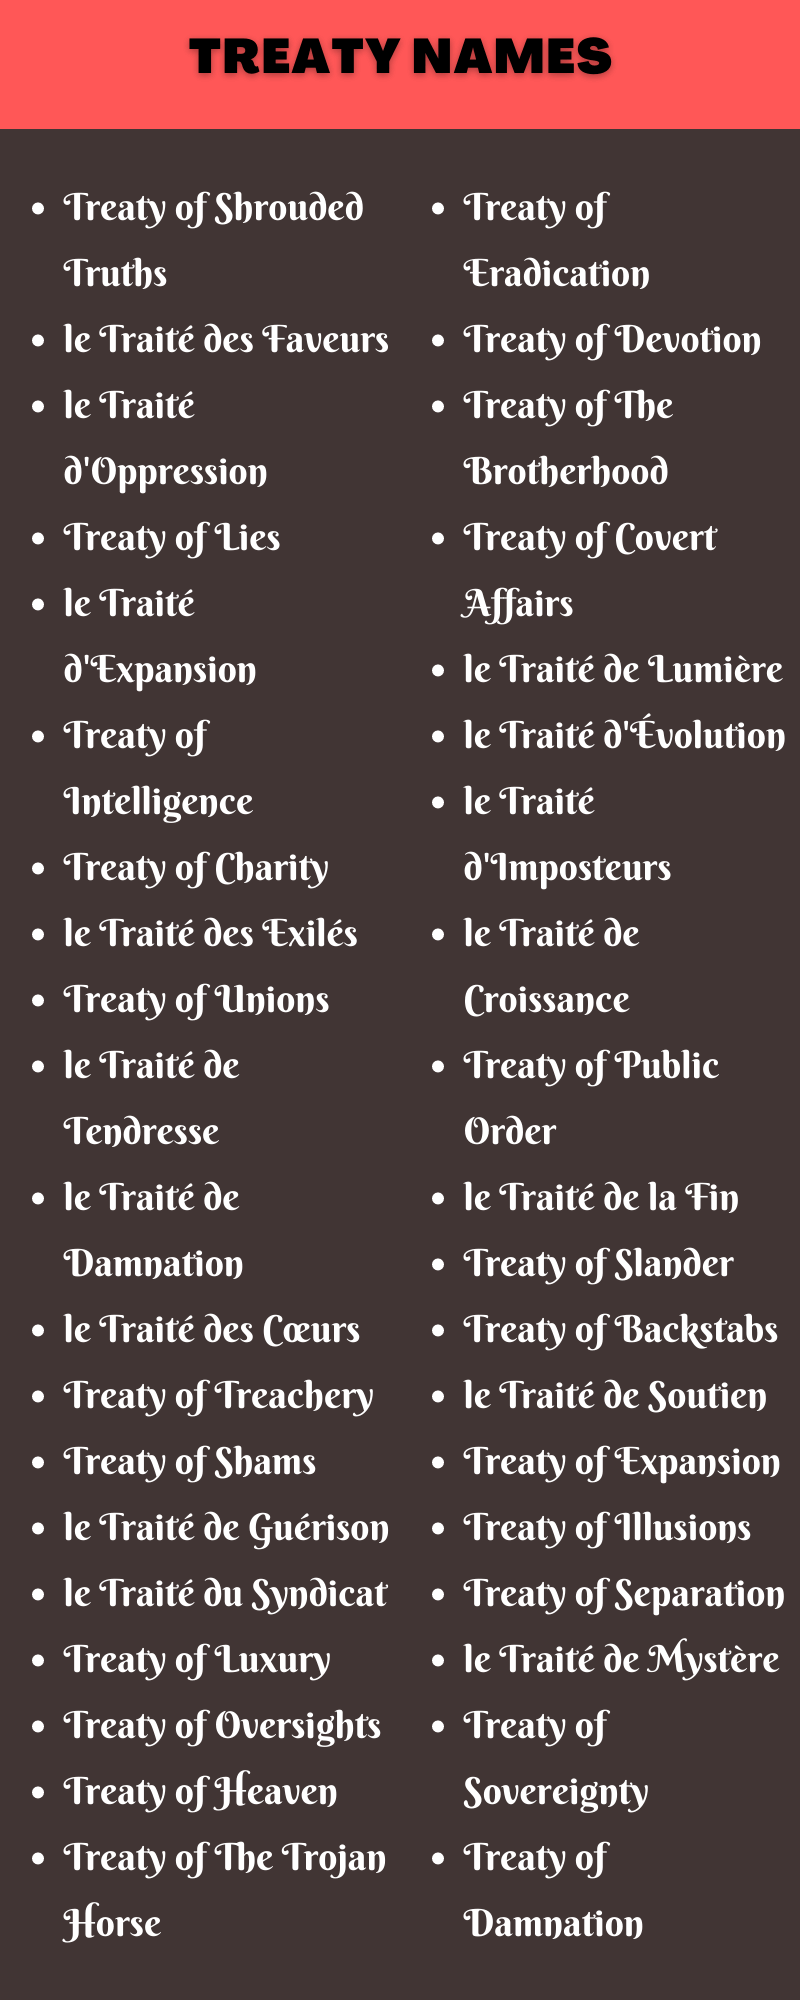 Treaty Names